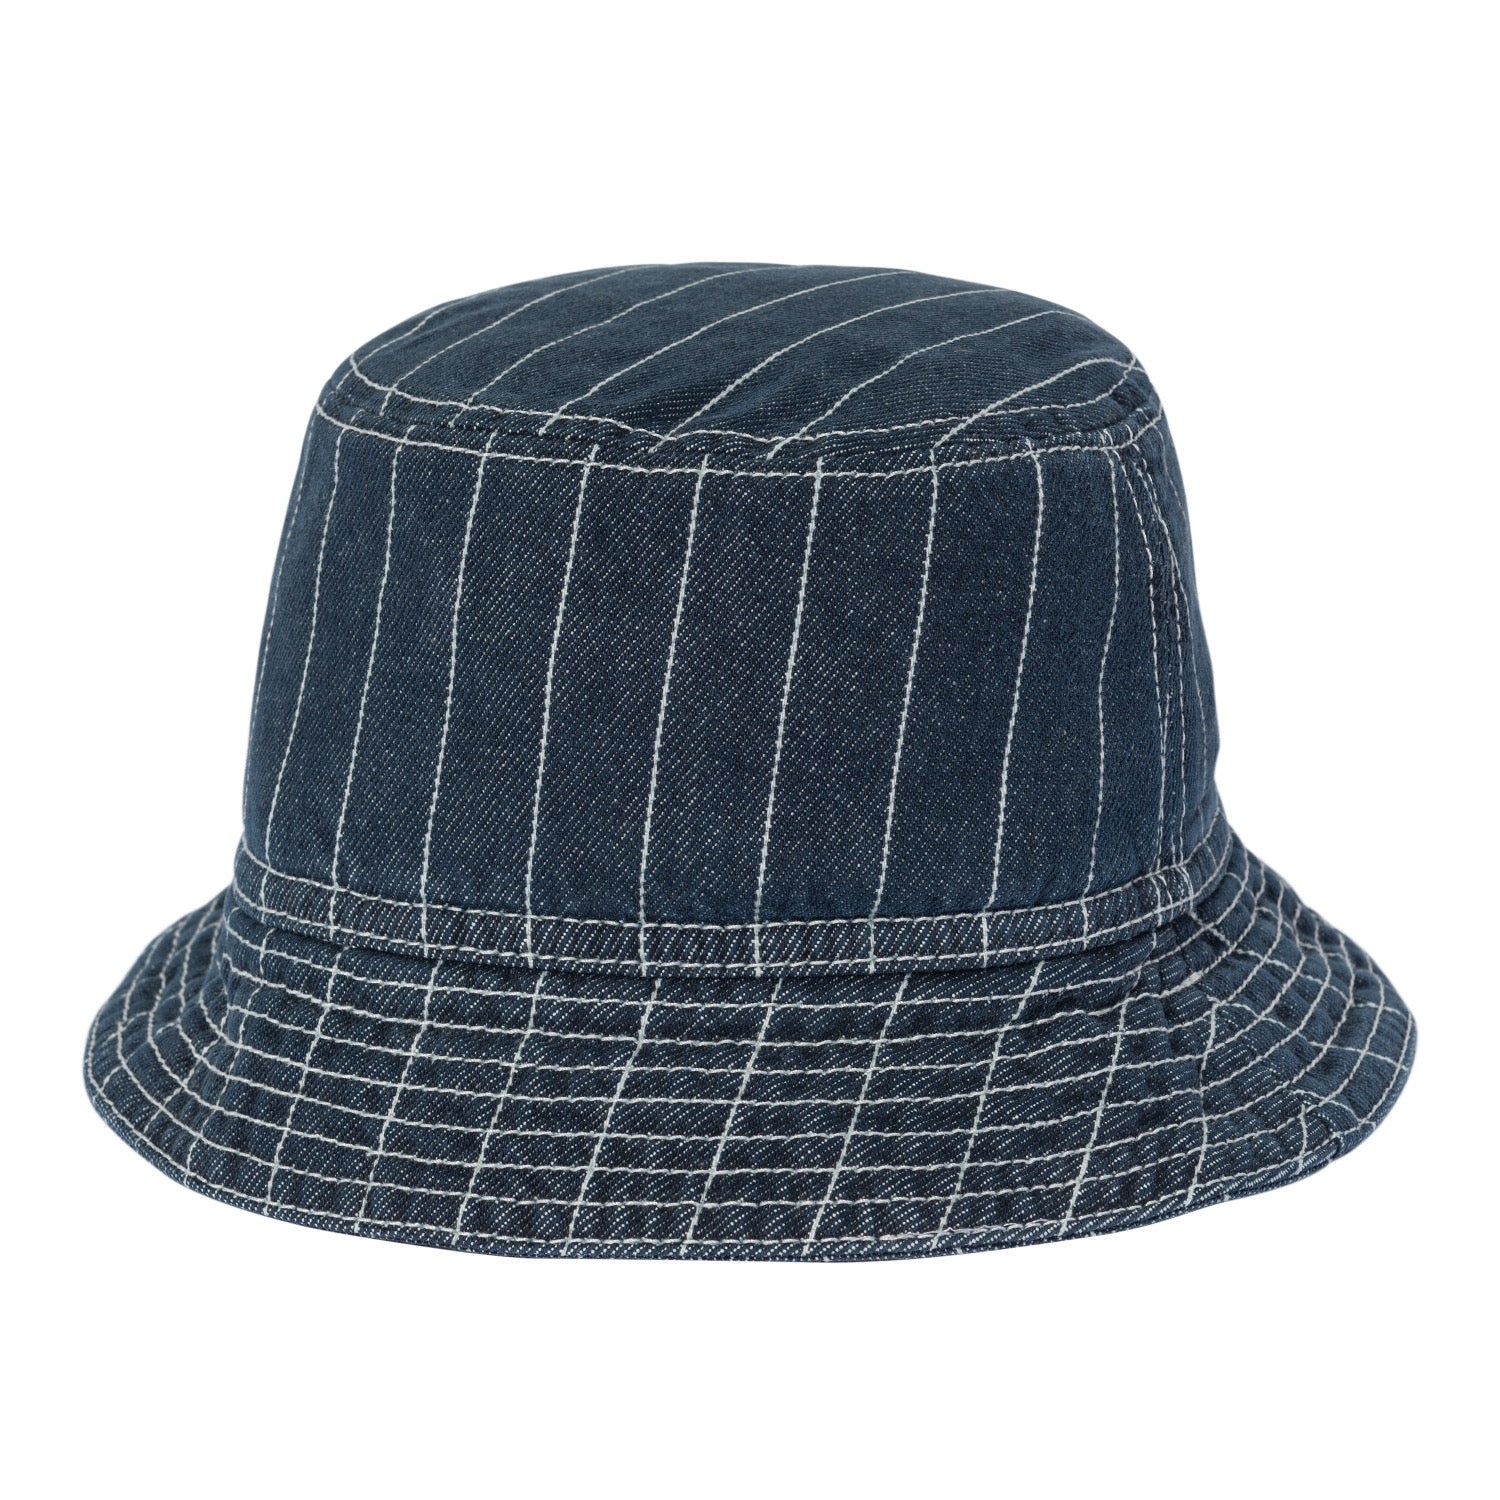 ORLEAN BUCKET HAT - Orlean Stripe, Blue / White (stone washed)